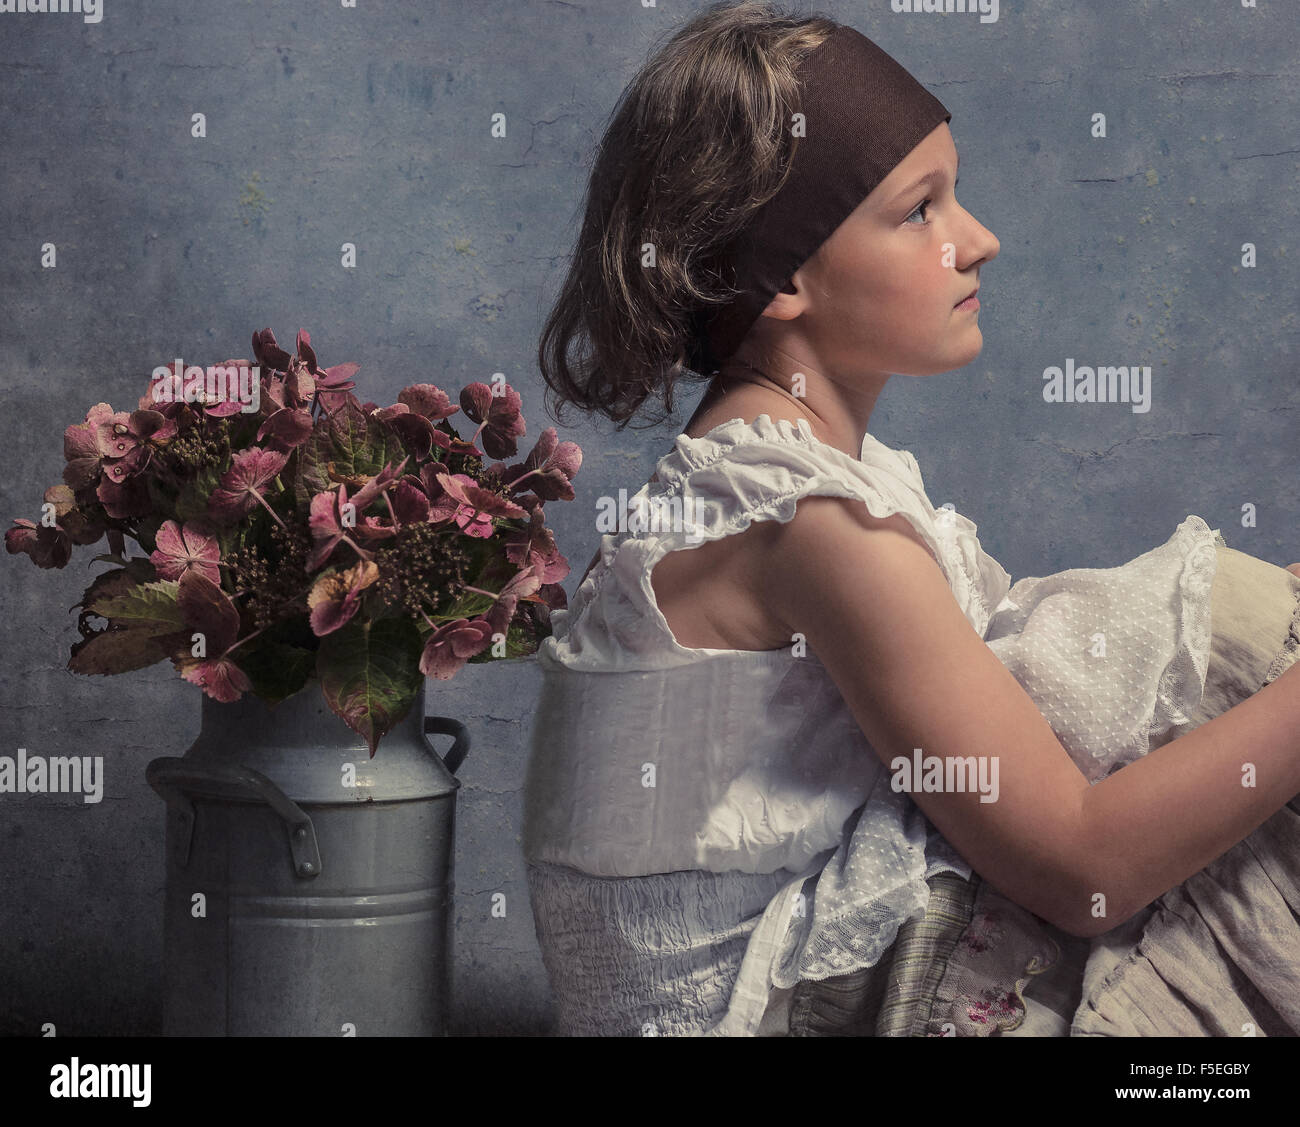 Vue latérale d'une fille assise avec son dos à un pot de fleurs Banque D'Images